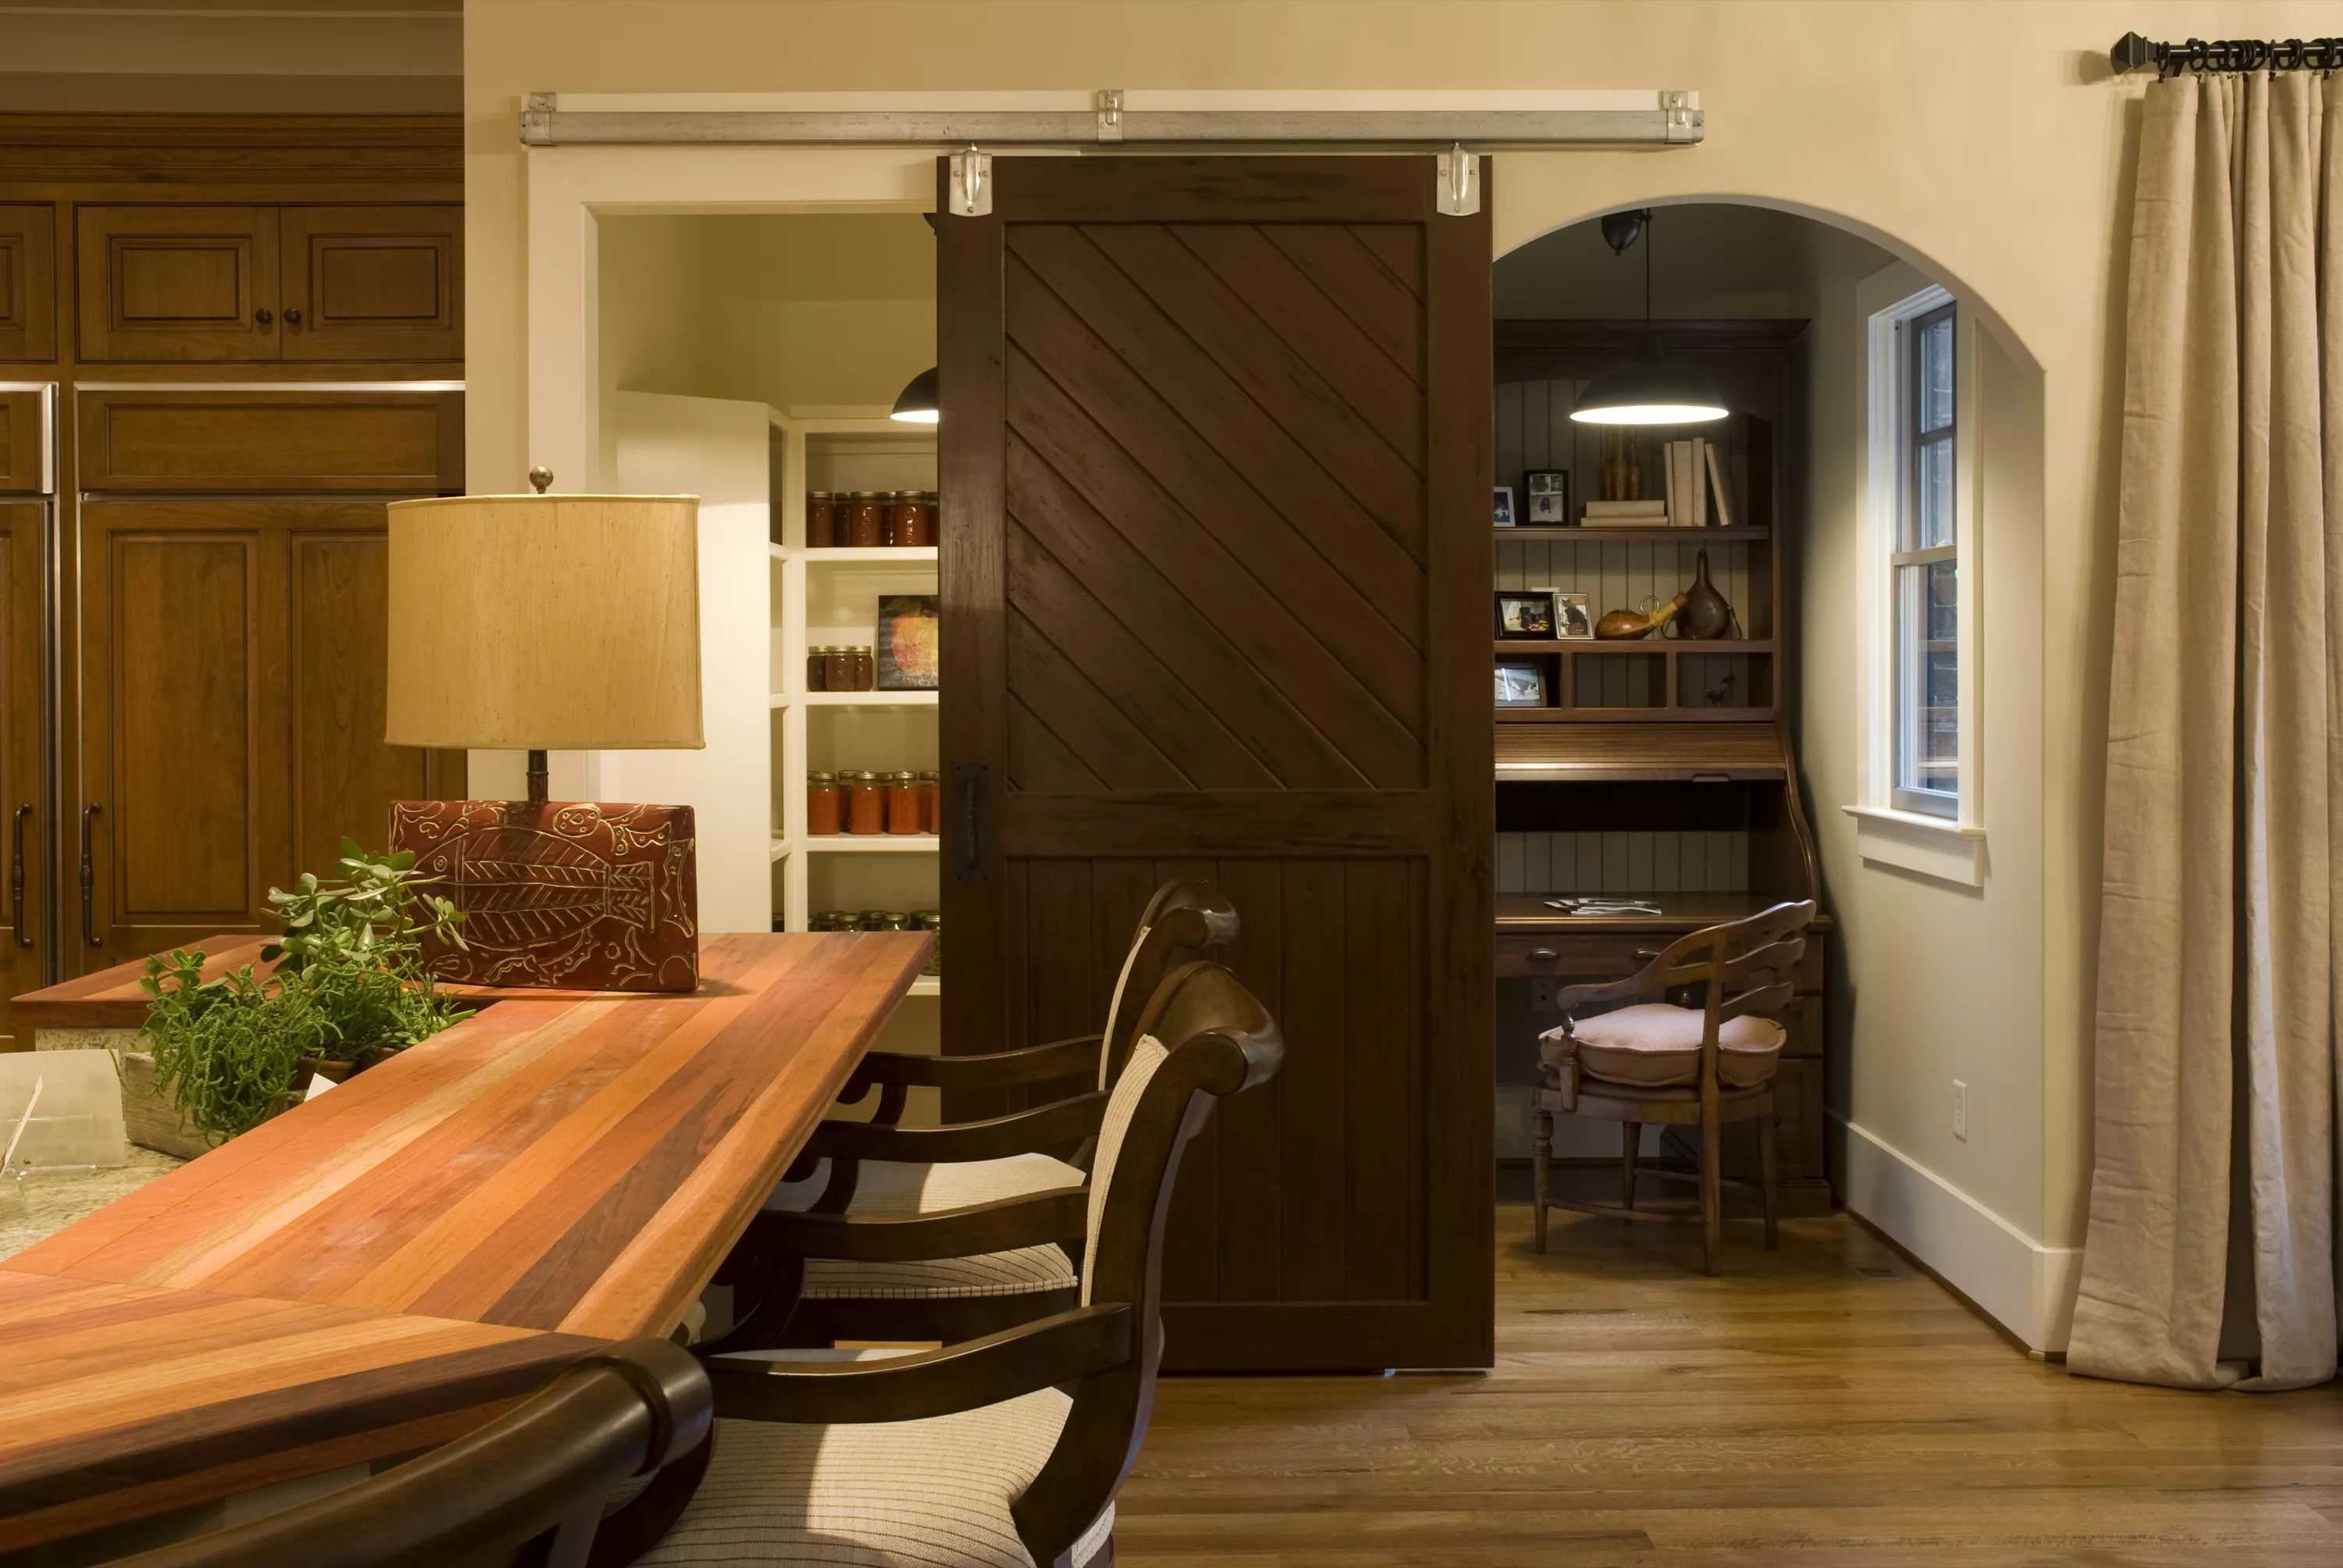 Двери на кухню - дверь на кухню со стеклом, раздвижная перегородка между кухней и гостиной, раздвижная стена, фото.кухня — вкус комфорта